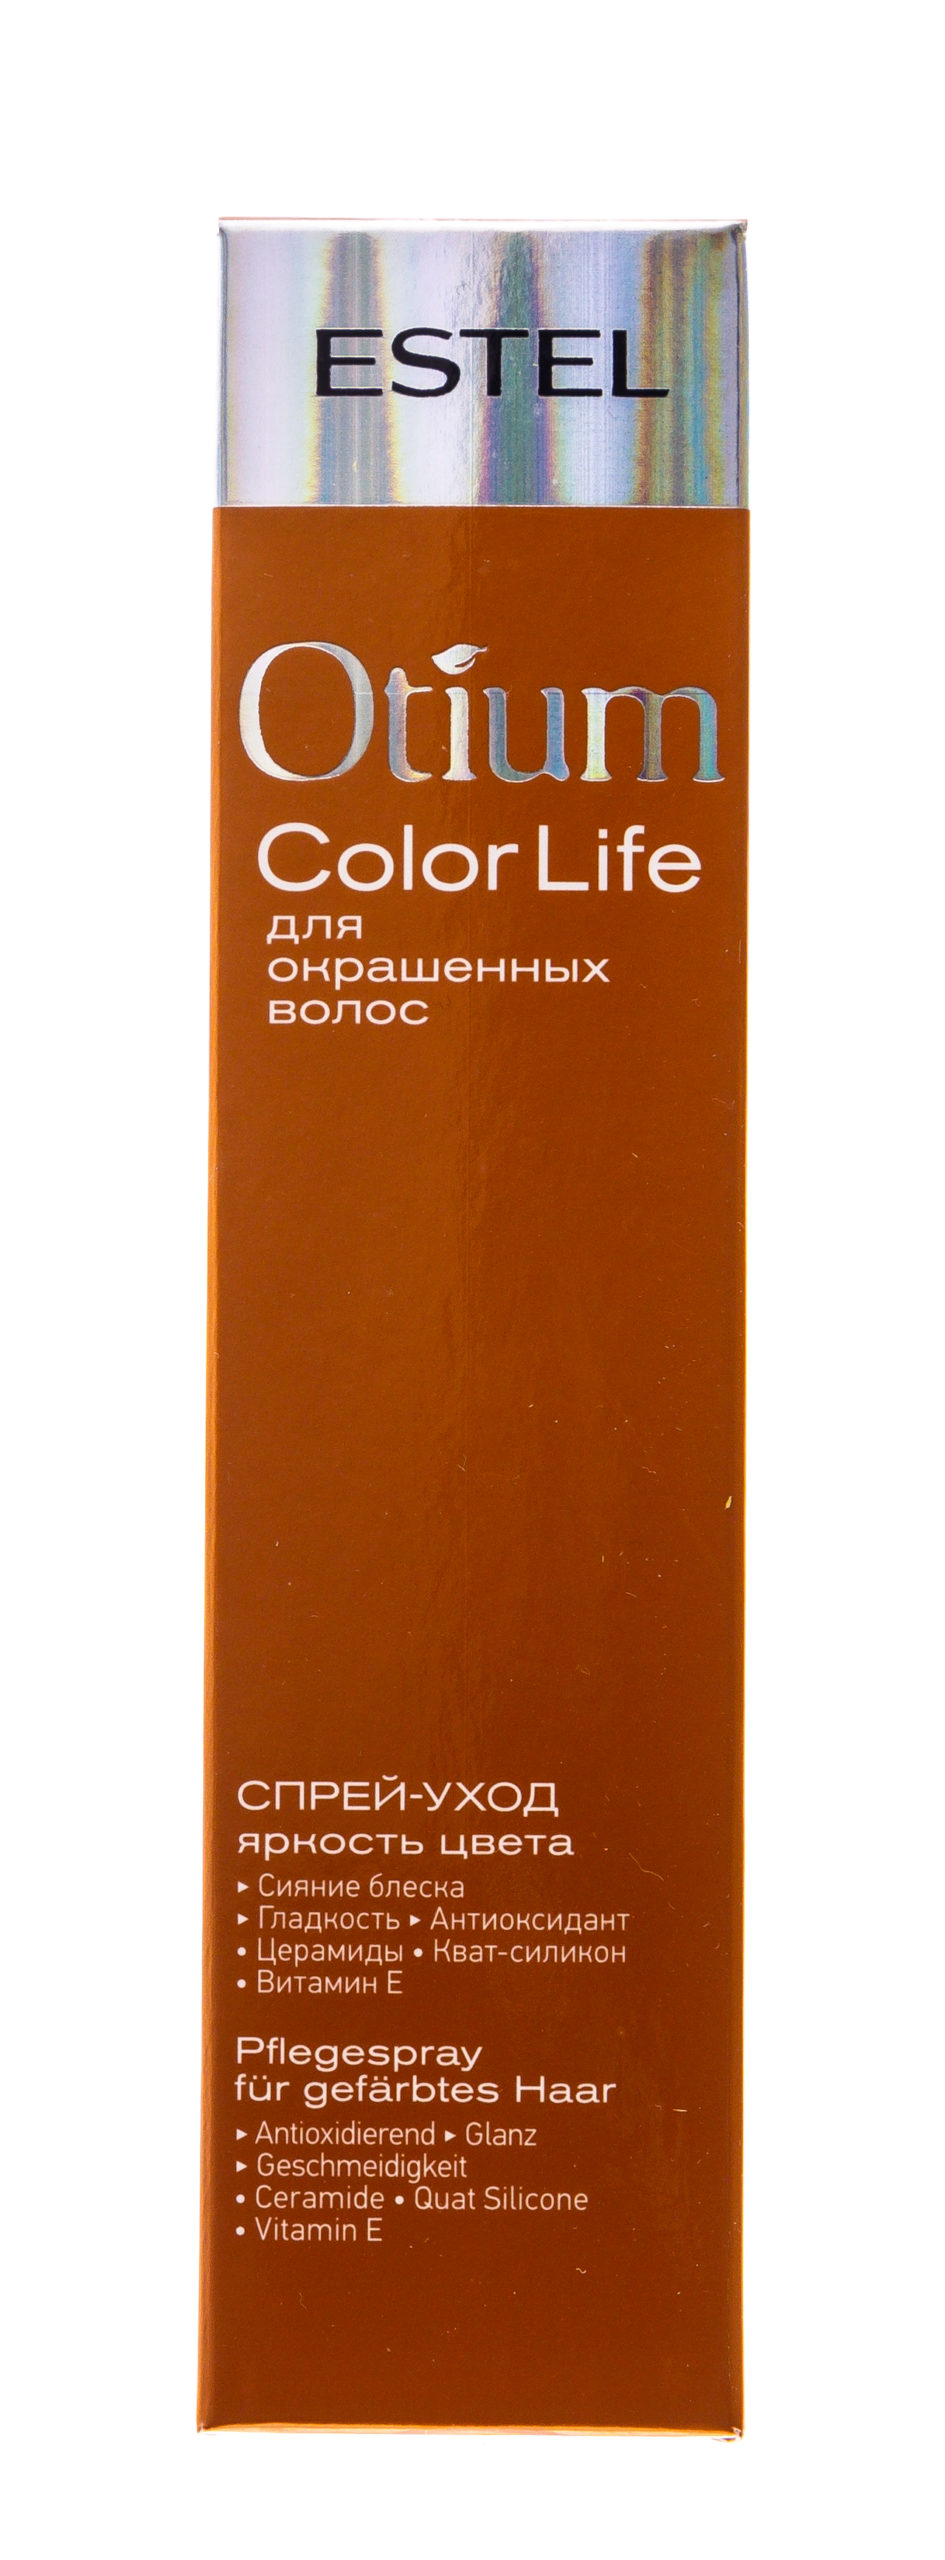 Спрей-уход для волос "Яркость цвета" Color life, 100 мл ESTEL